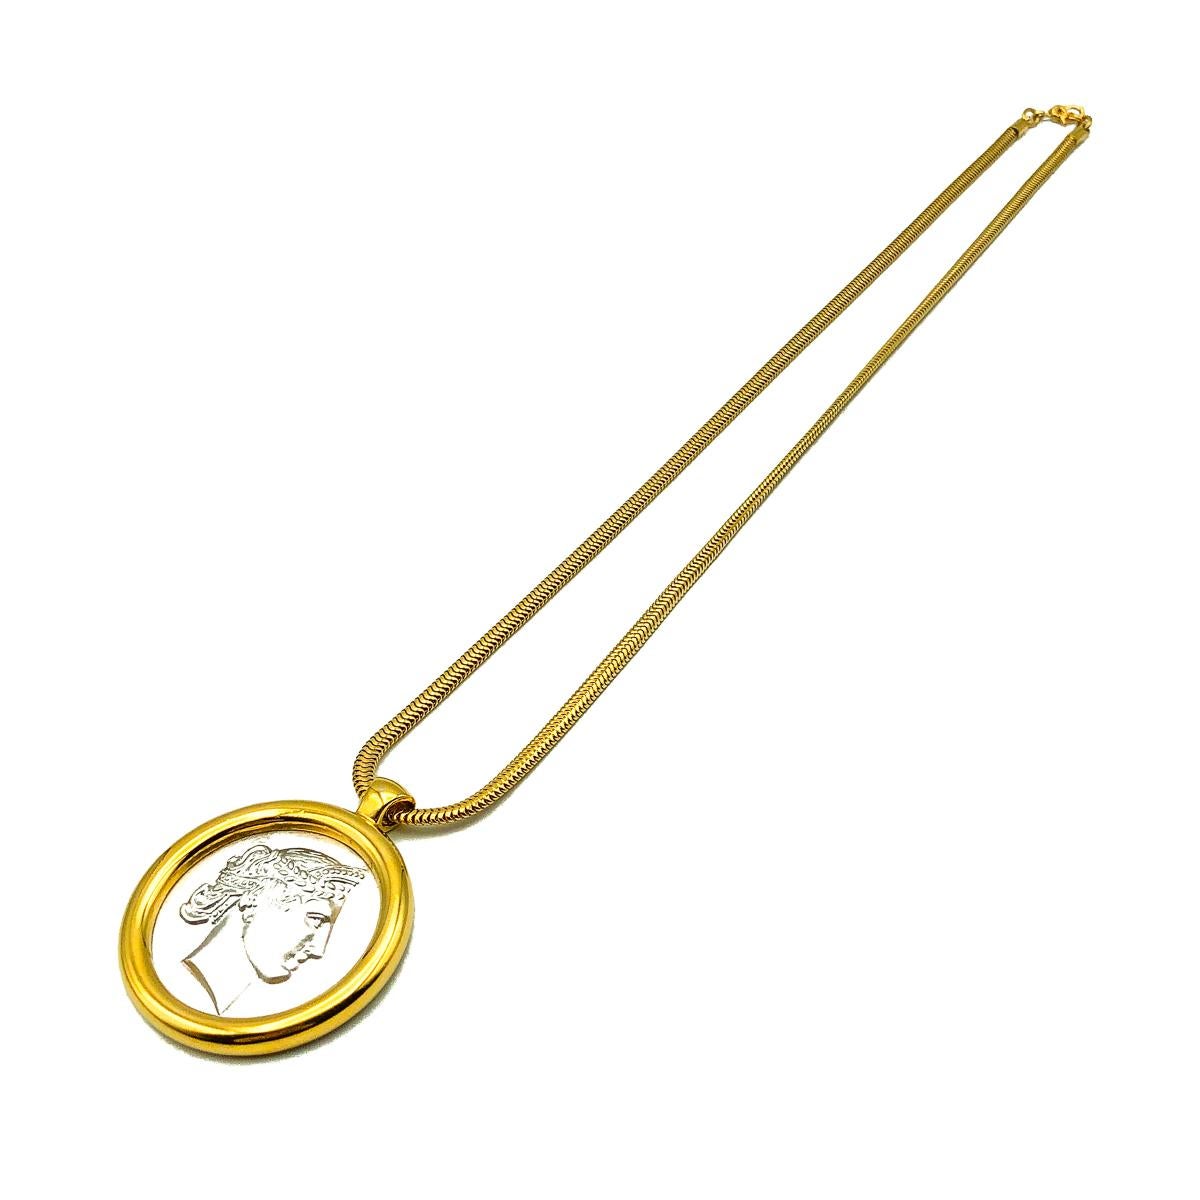 Eine alte Monet-Medaillon-Halskette. Vergoldetes und silberfarbenes Metall. Mit einem Anhänger im Stil eines Münzmedaillons und einer Schlangengliederkette.  Signiert, in sehr gutem Vintage-Zustand, Kette ca. 51cm mit einem Durchmesser des Anhängers